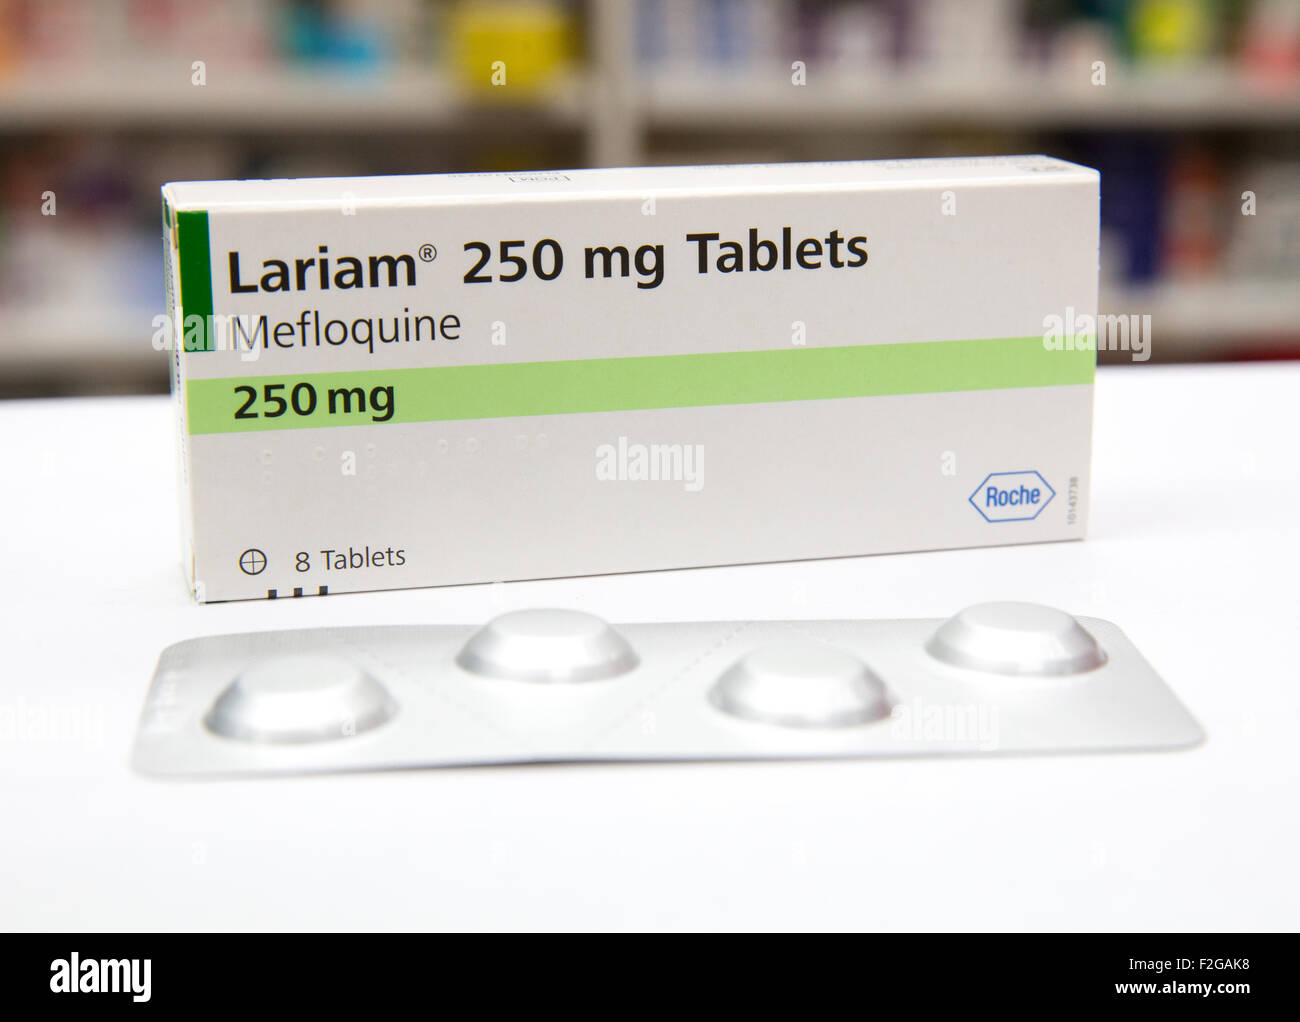 Anti-Malaria-Medikament Lariam Mefloquin enthält. Angehörigen der Armee haben Alpträume und Depressionen beschwert. Stockfoto